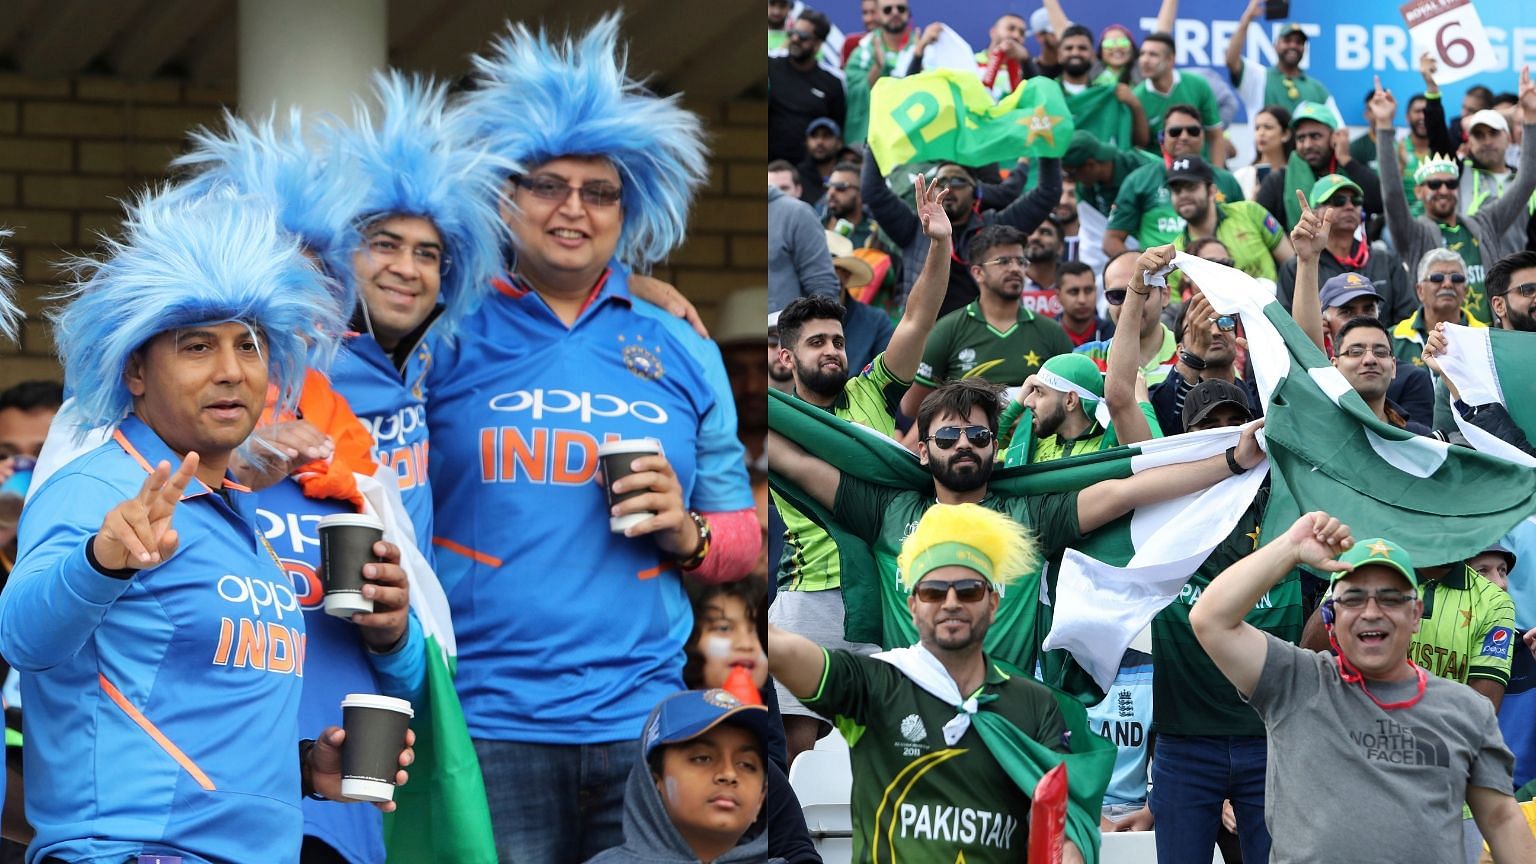 वर्ल्ड कप में भारत और पाकिस्तान के फैंस हर मैच में भारी संख्या में पहुंच रहे हैं